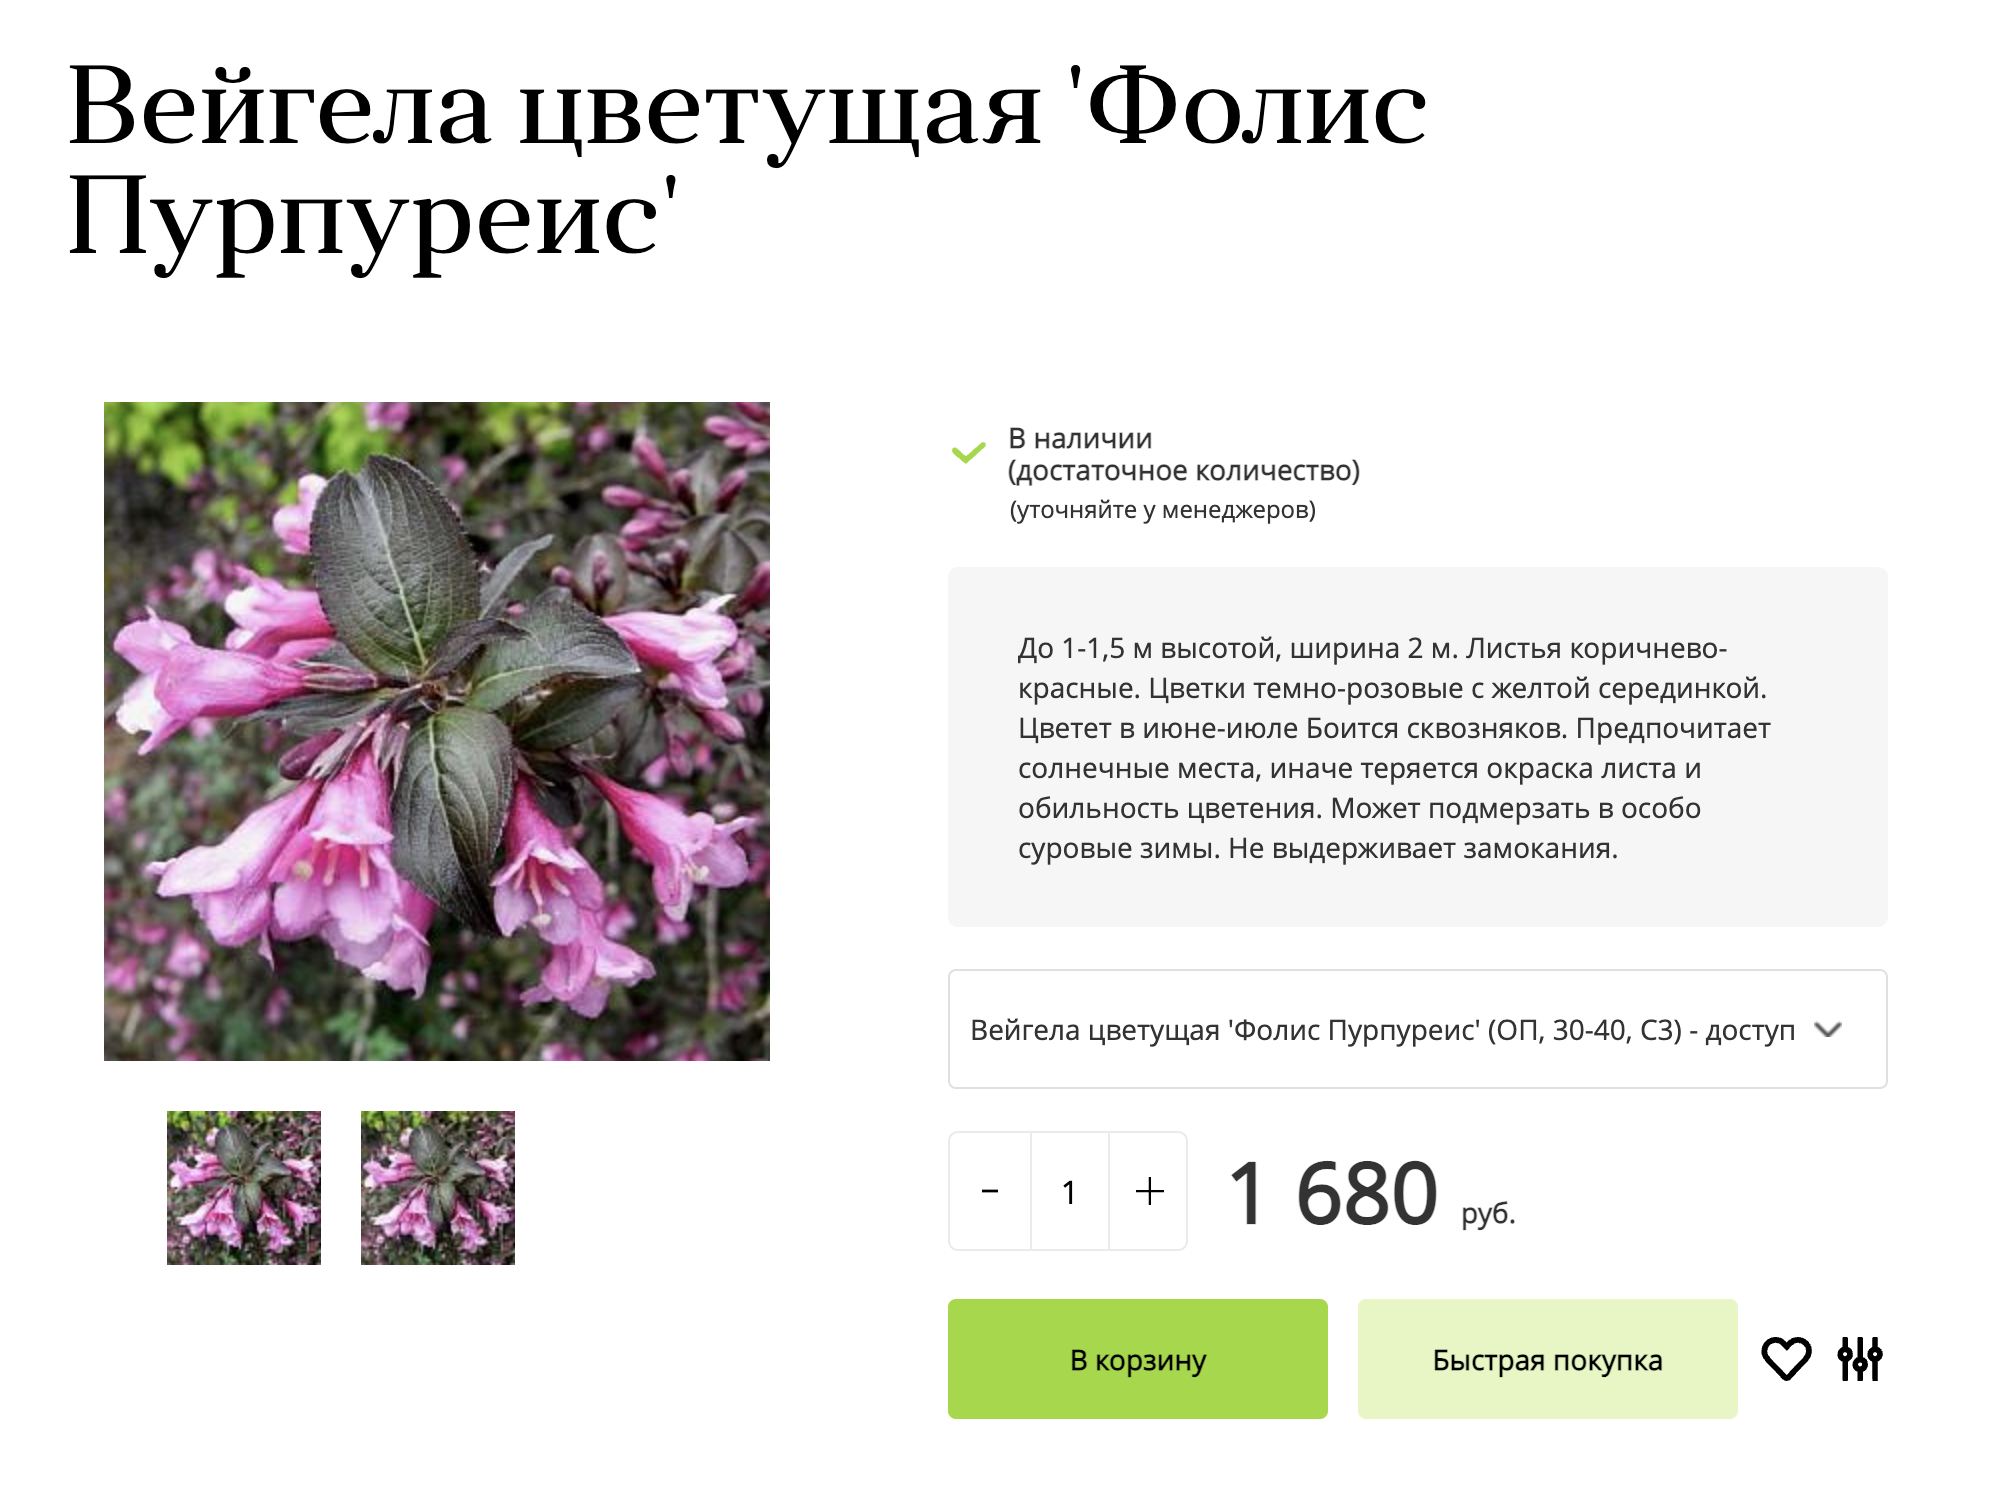 Это уже сортовое растение — с названием сорта «Фолис Пурпуреис». Оно будет расти чуть медленнее, чем просто вейгела цветущая. Источник: uzhniy.ru